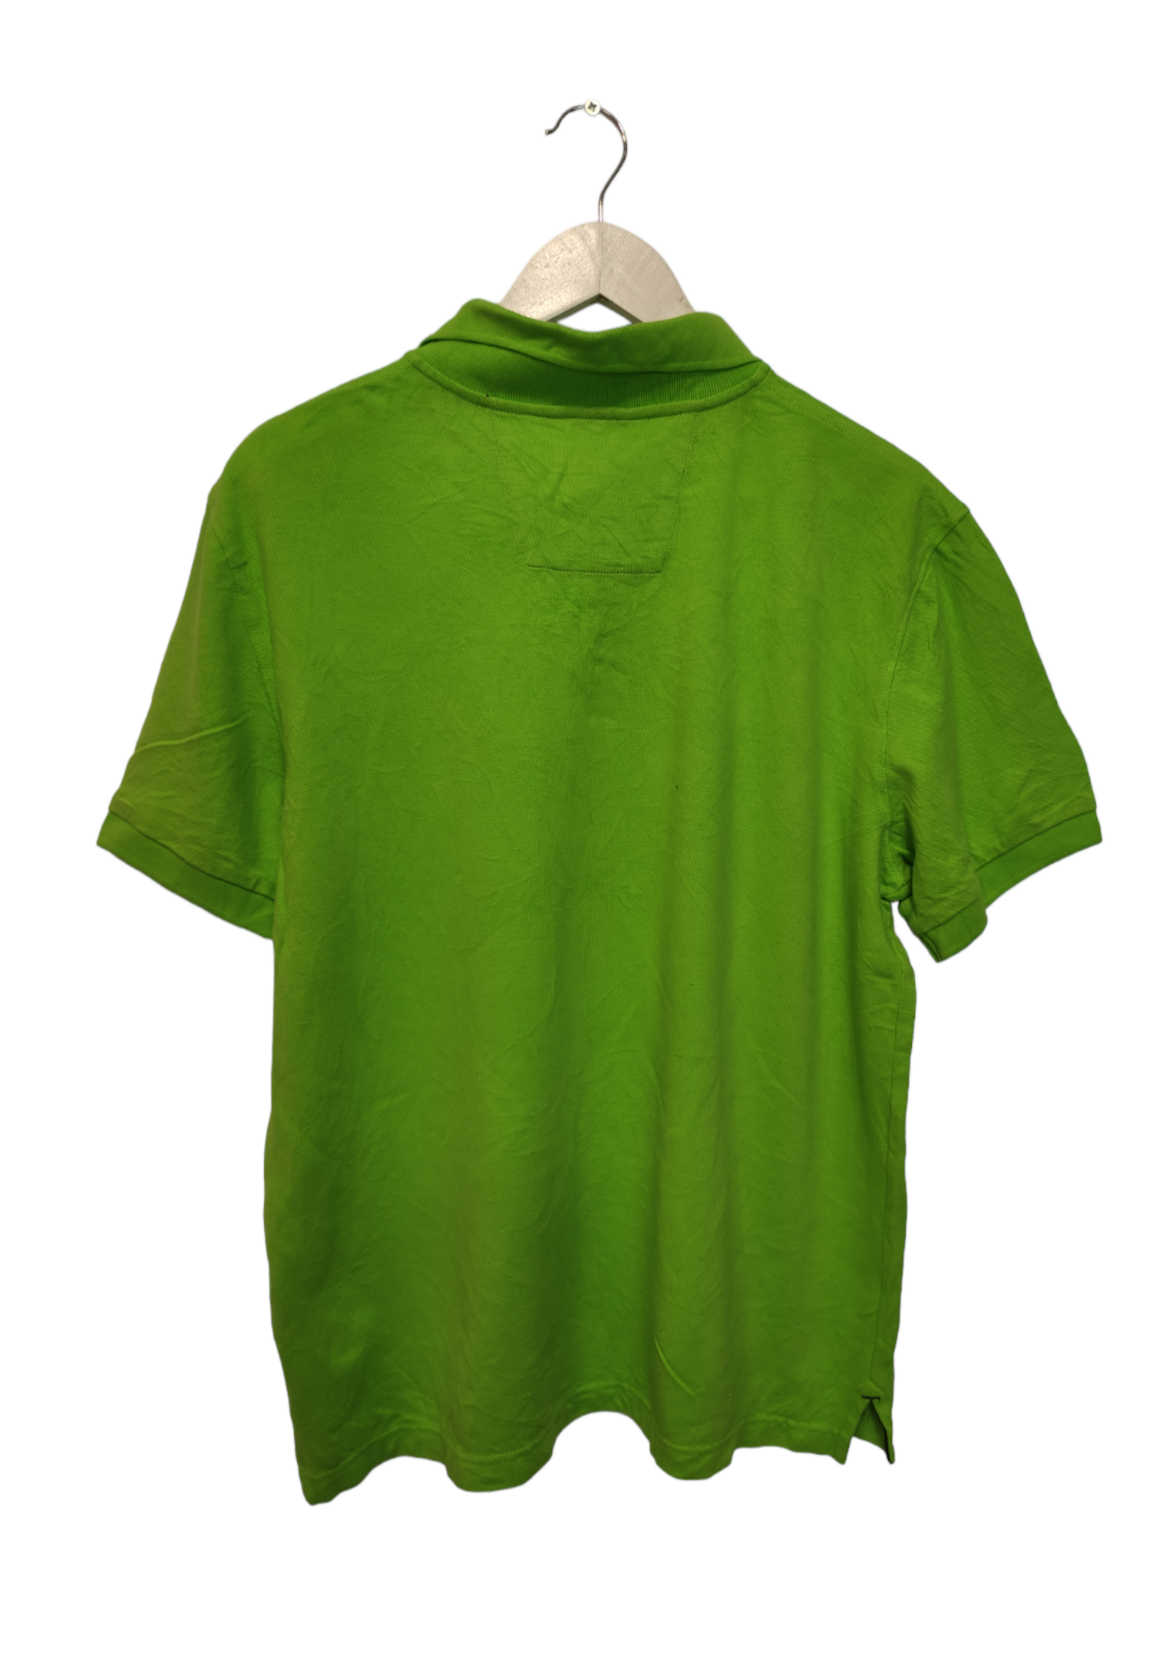 Ανδρική Μπλούζα NAUTICA στυλ Polo σε Λαχανί Χρώμα (Large)